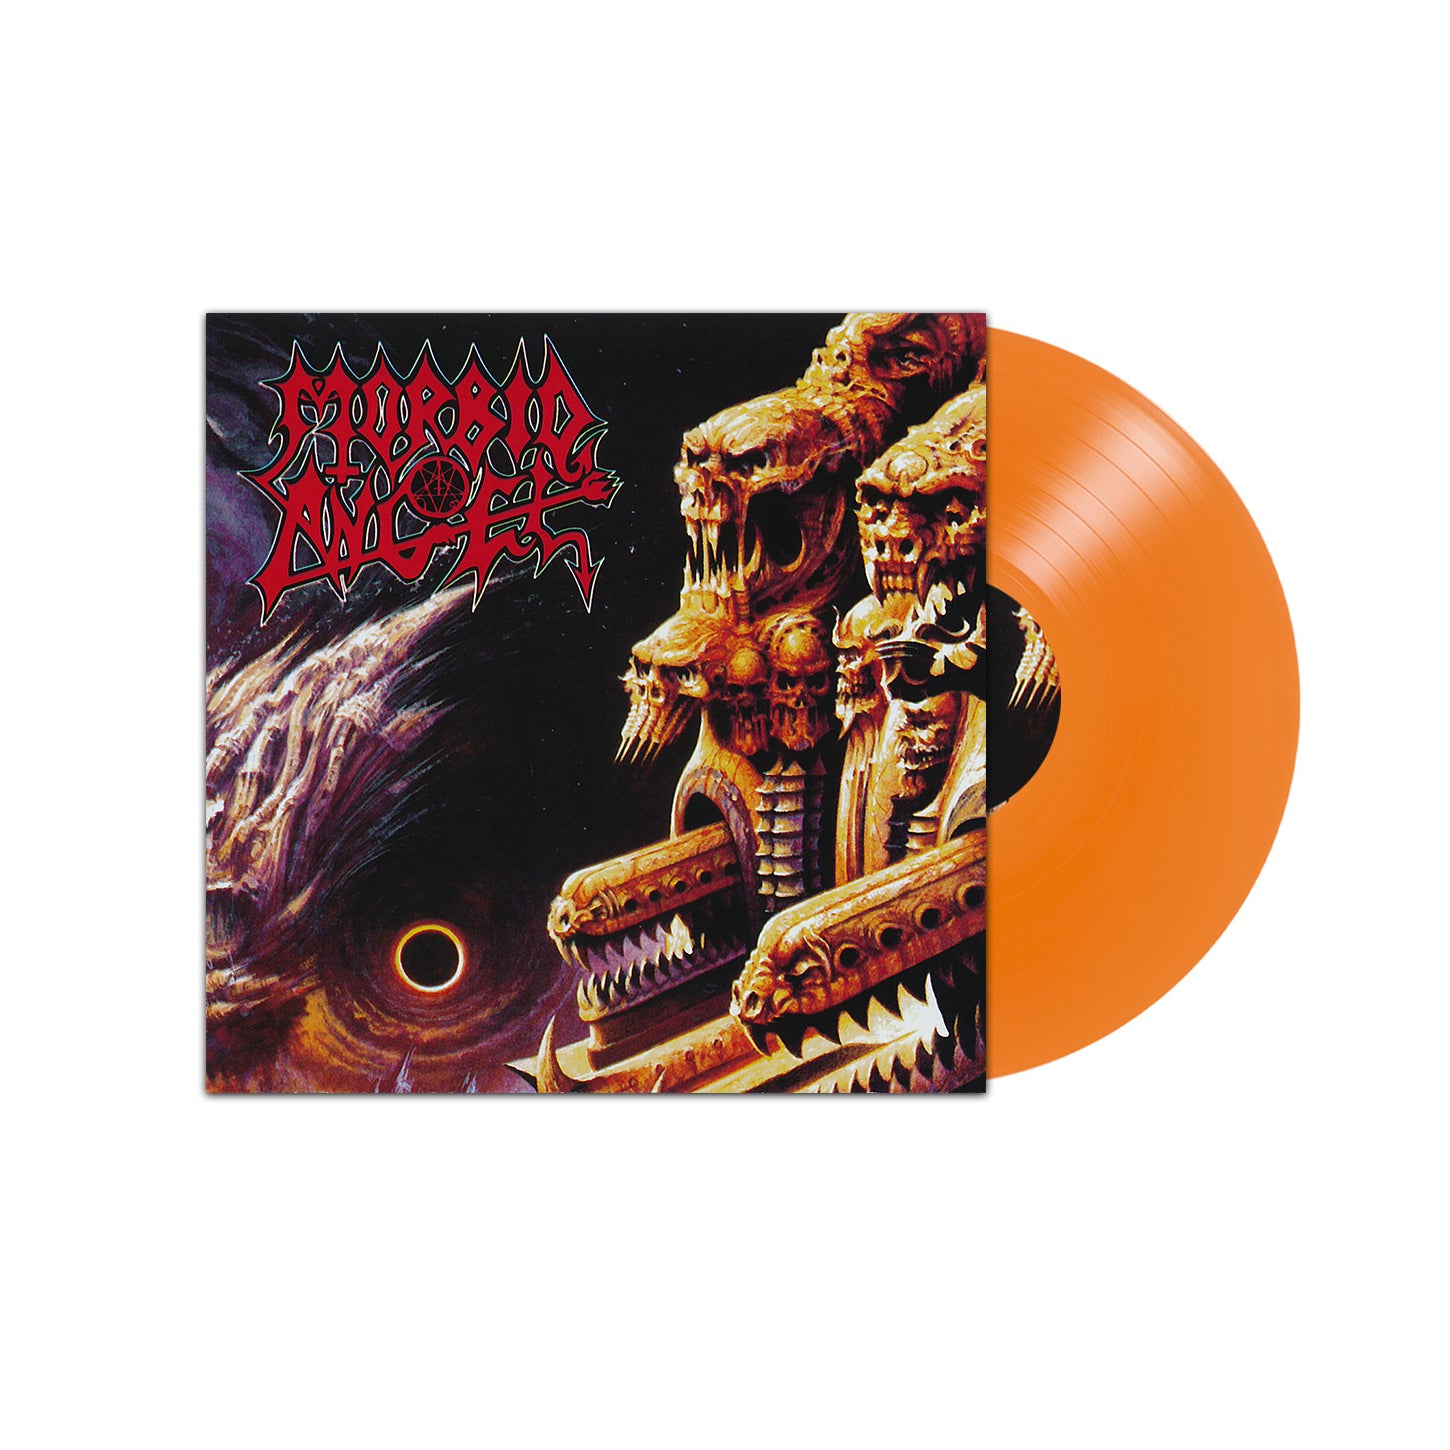 Morbid Angel "Gateways To Annihilation" Orange Vinyl